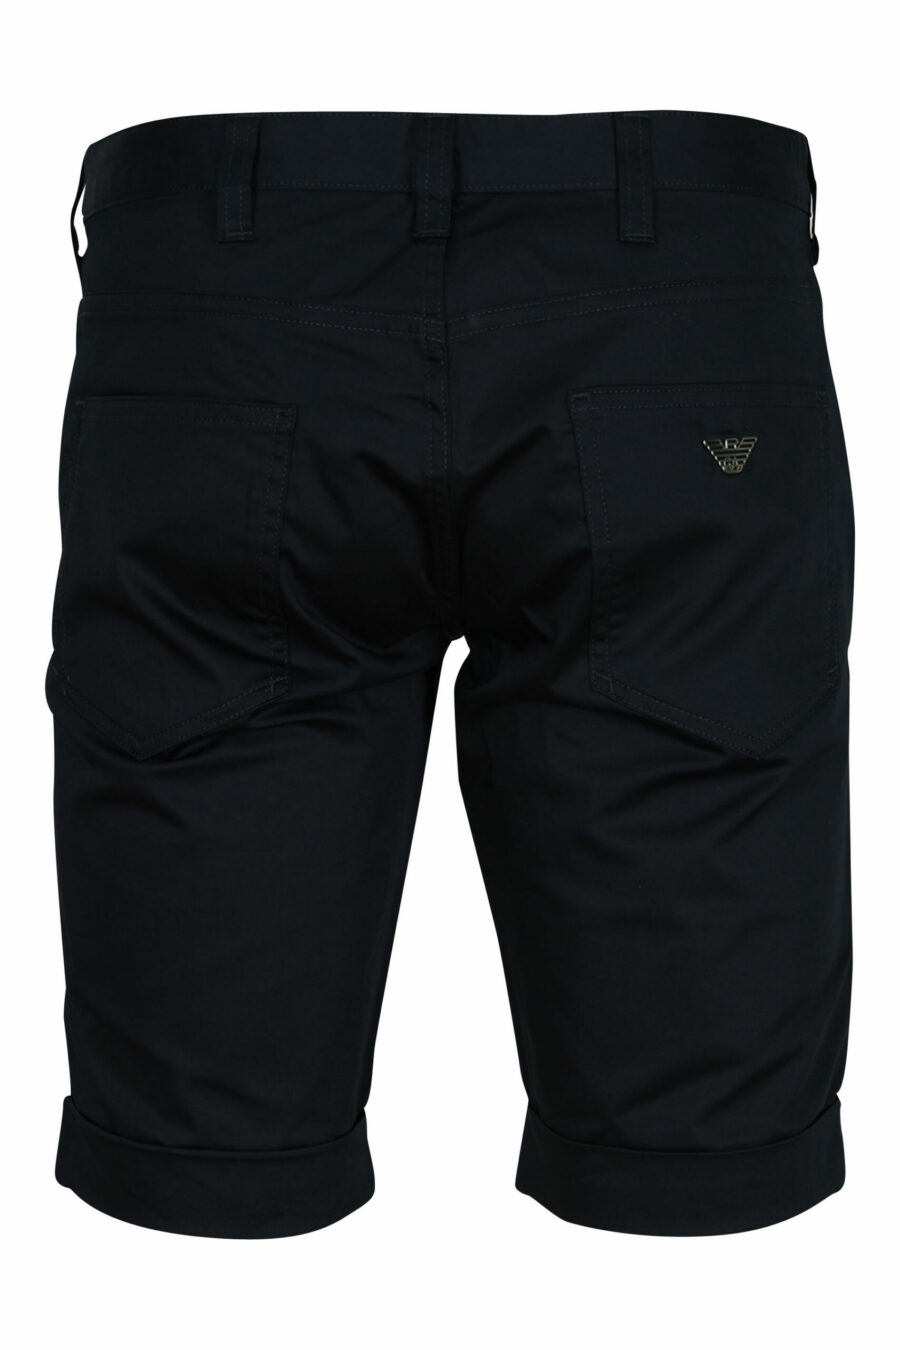 Dunkelblaue Shorts mit Mini-Adler-Logo - 8057163567200 1 skaliert